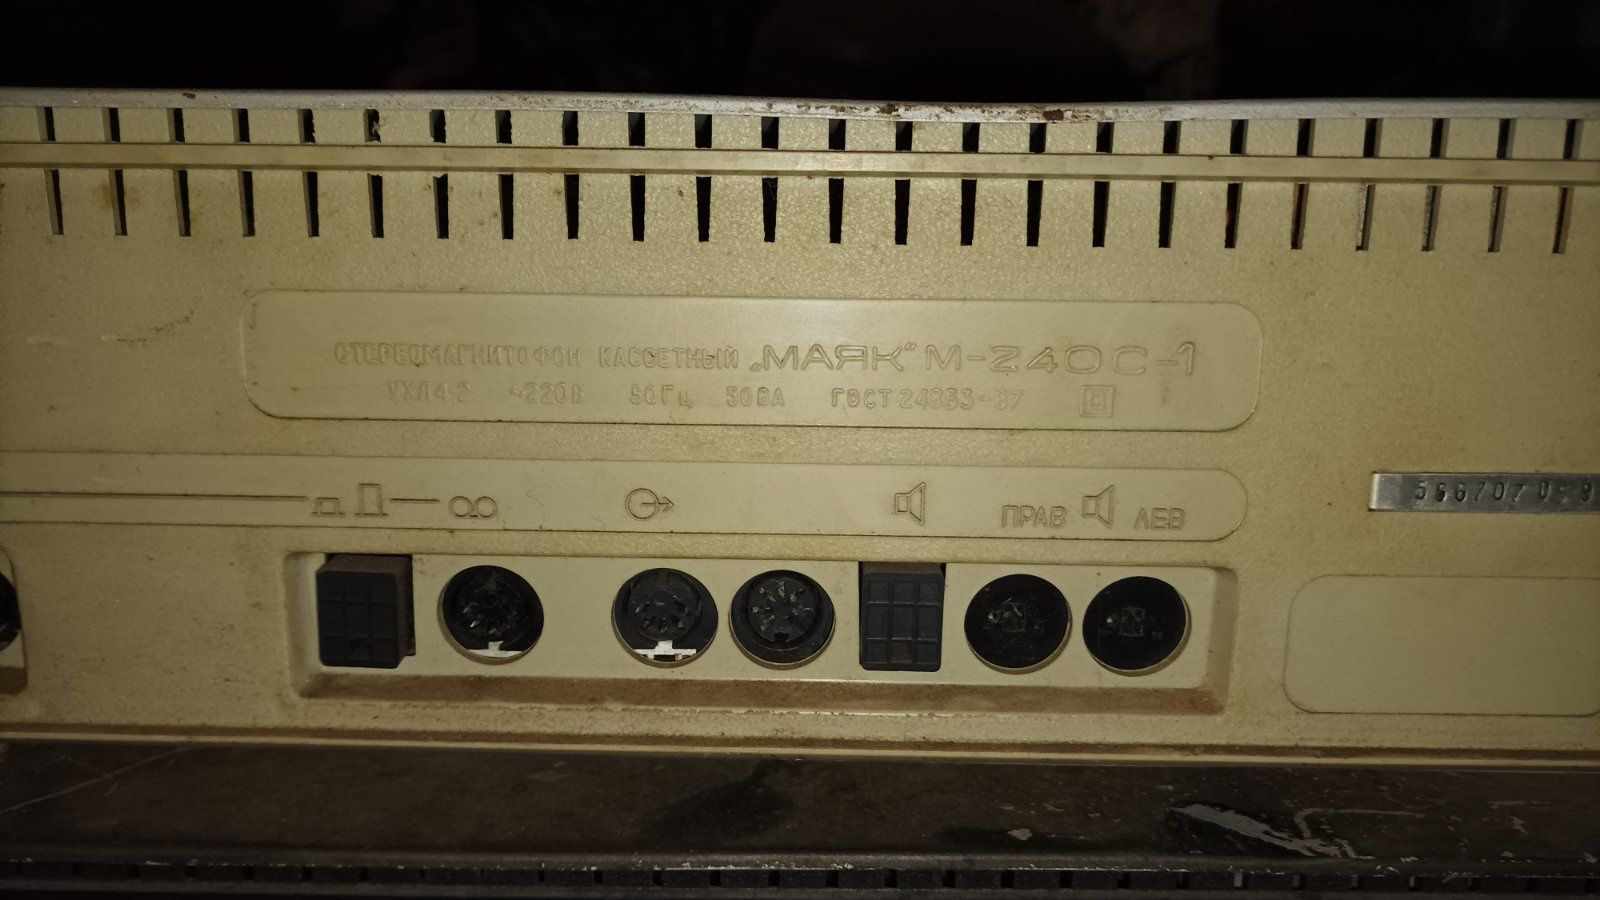 Магнитофон Маяк 240-С1 по запчастям,комплектующие